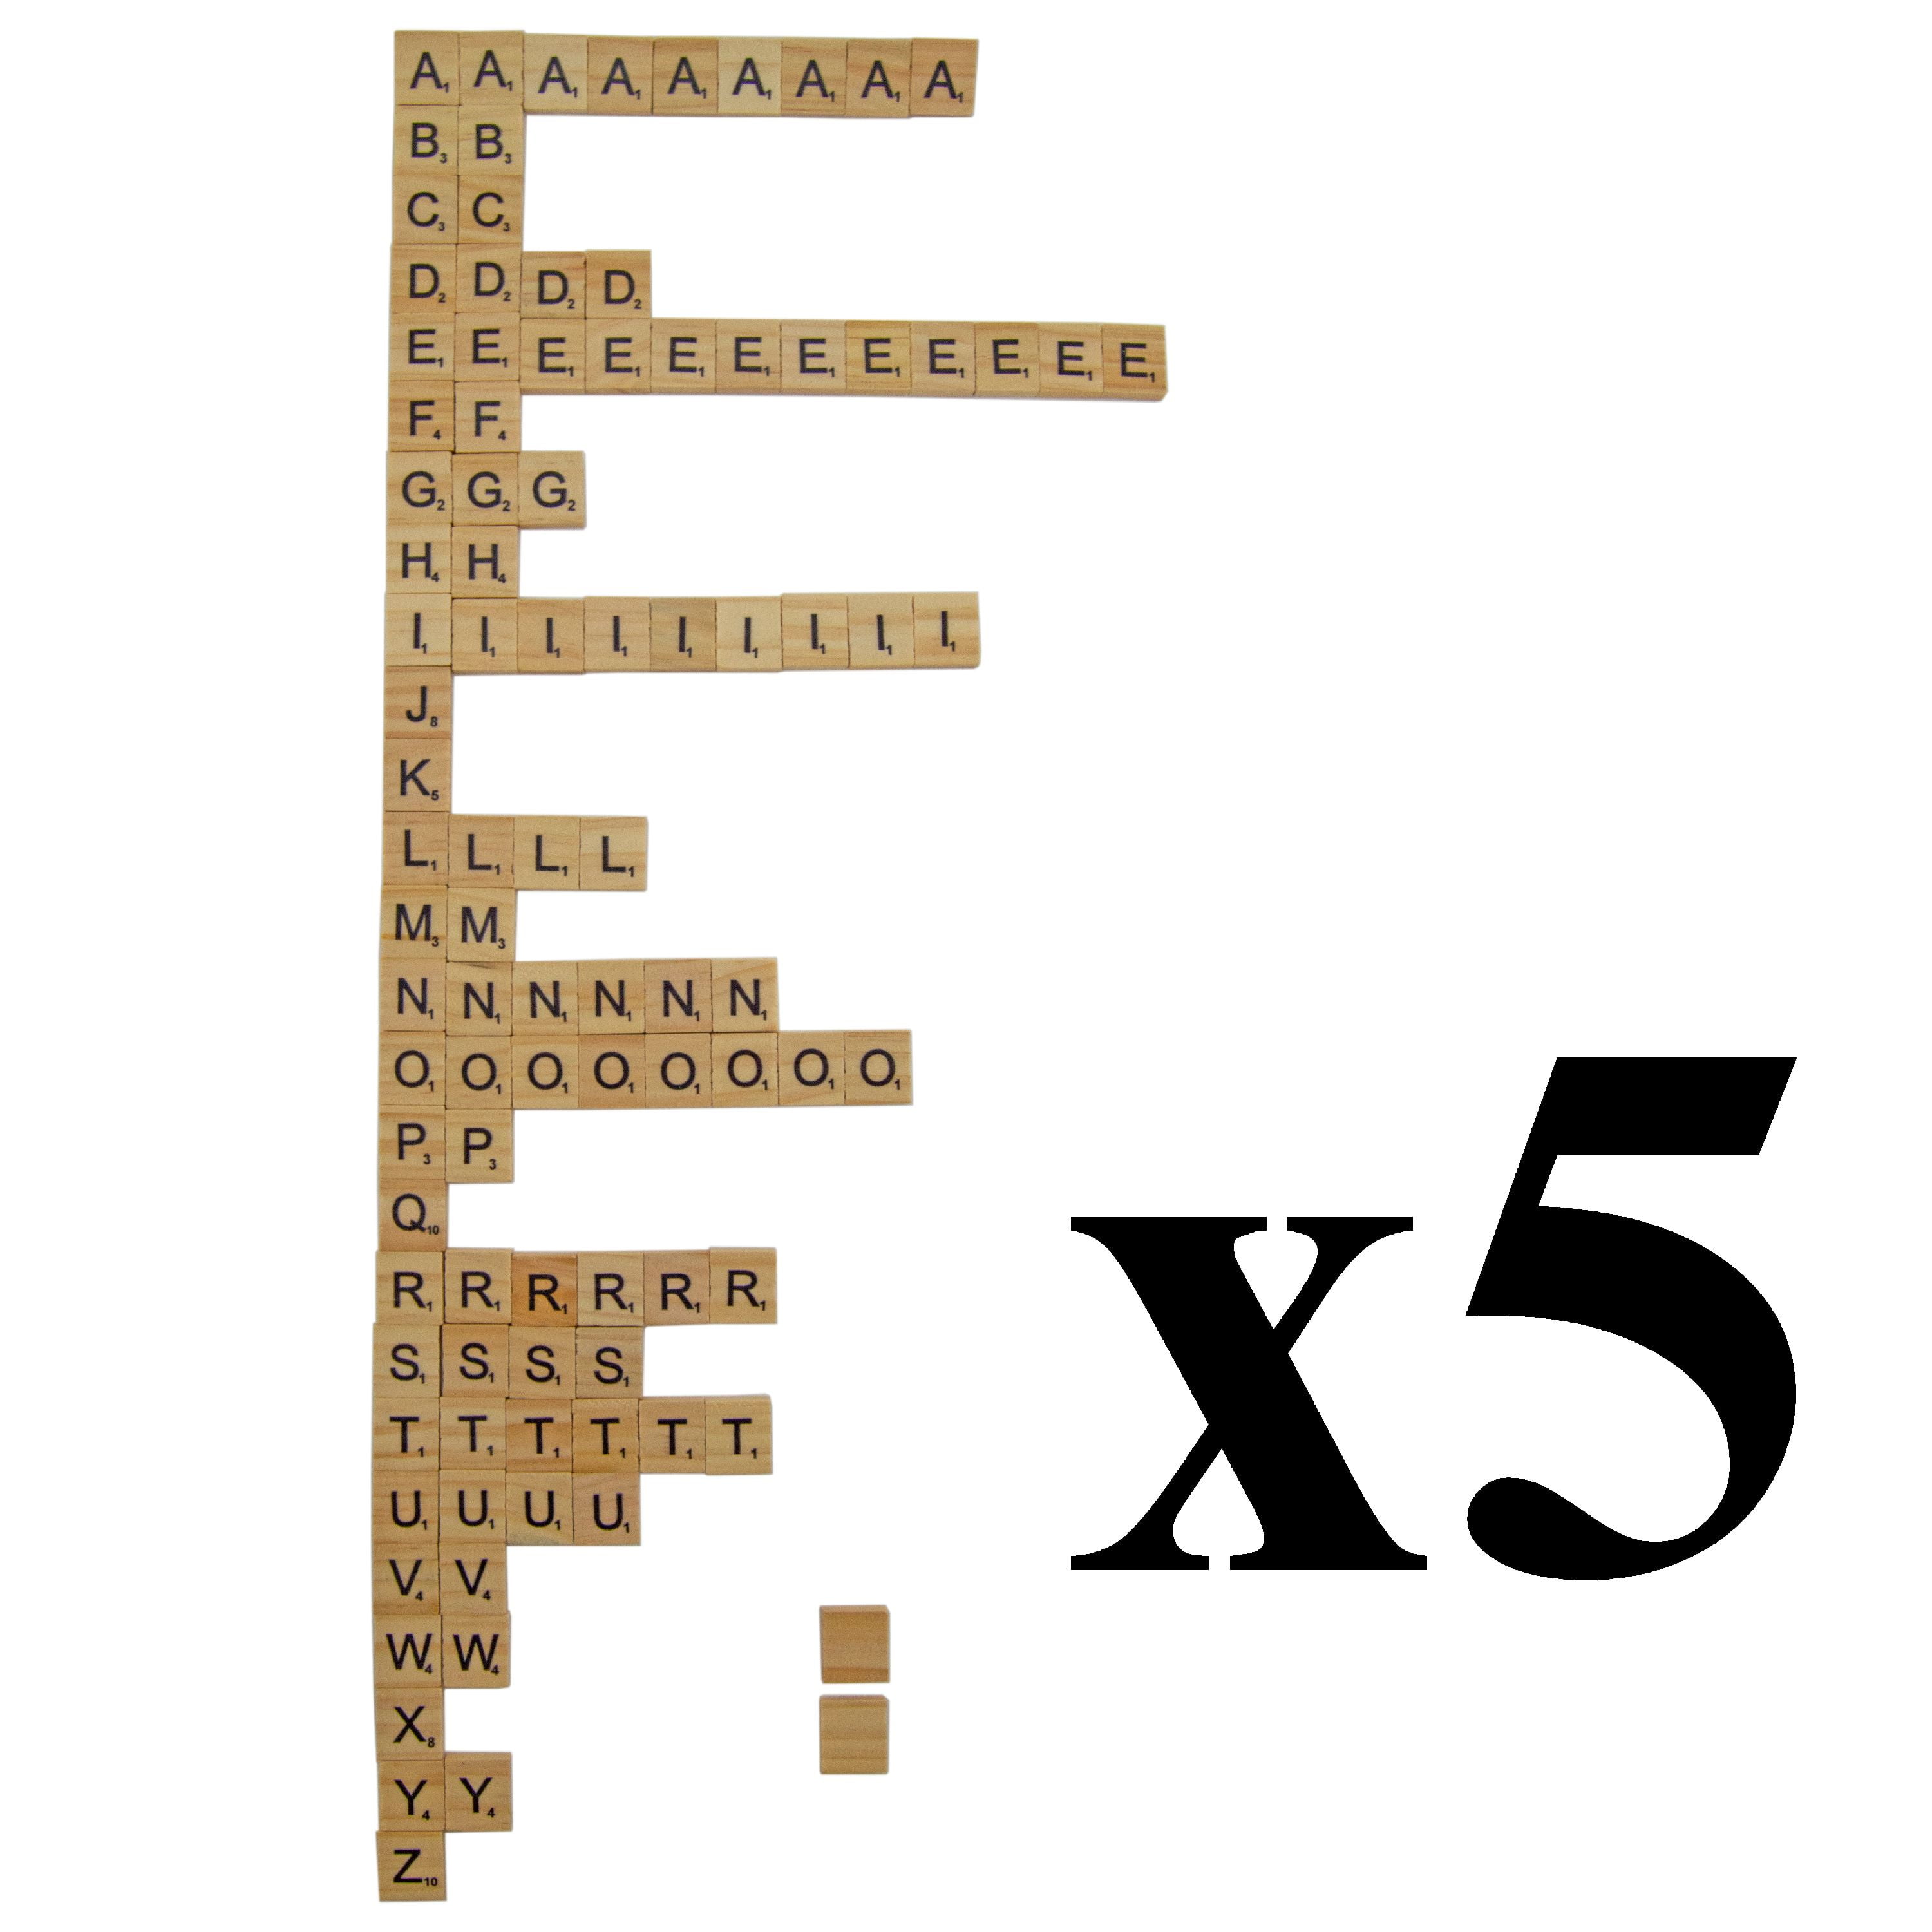 300+ pcs mixed letter tiles, lot letter mix, game pieces